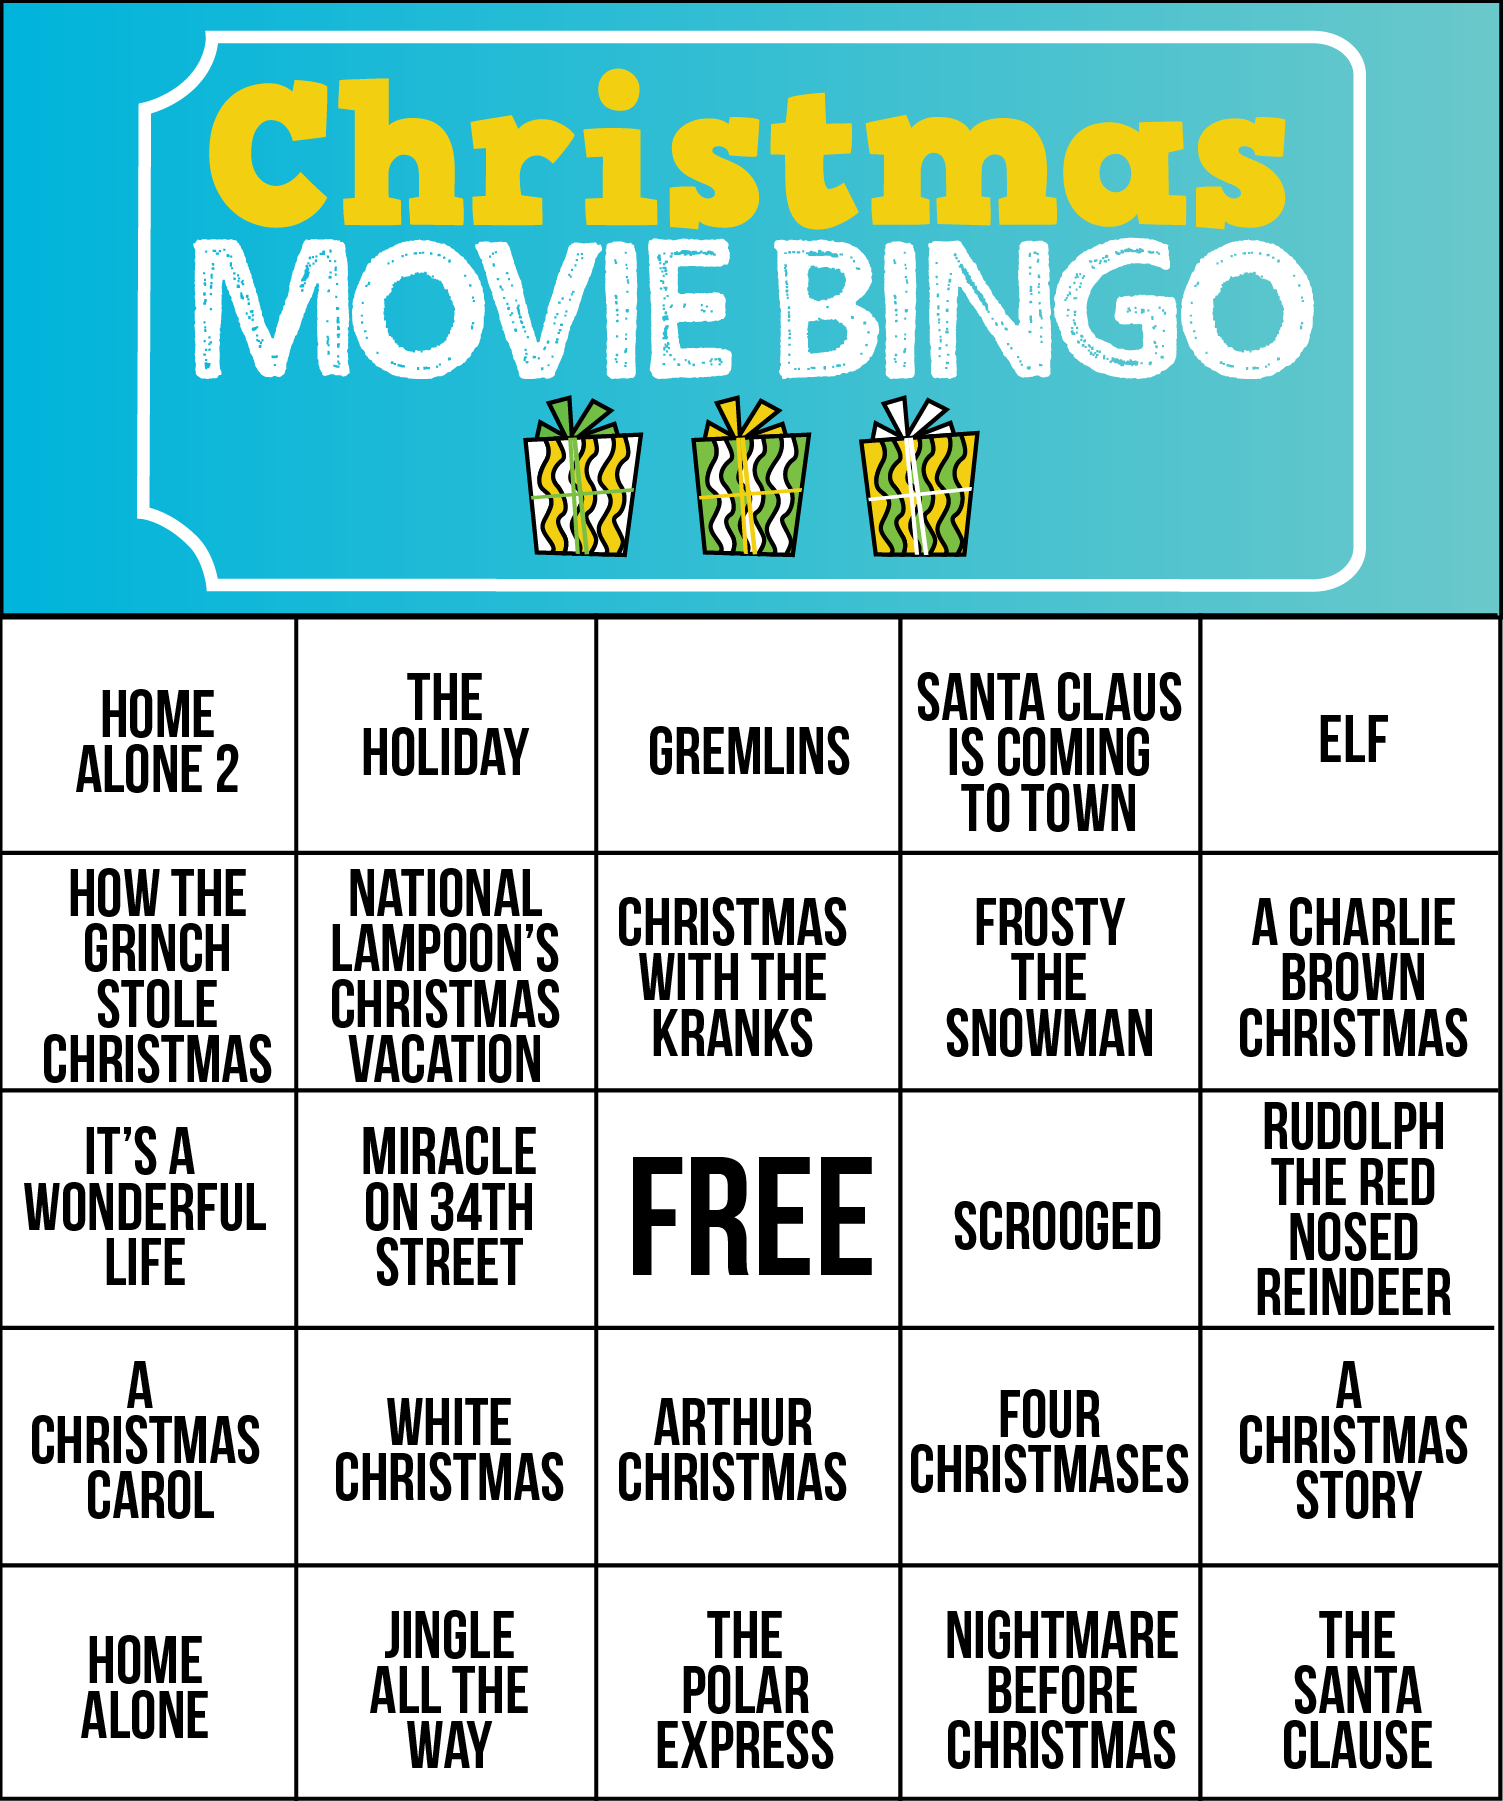 Free Printable Holiday Movie Christmas Bingo Cards